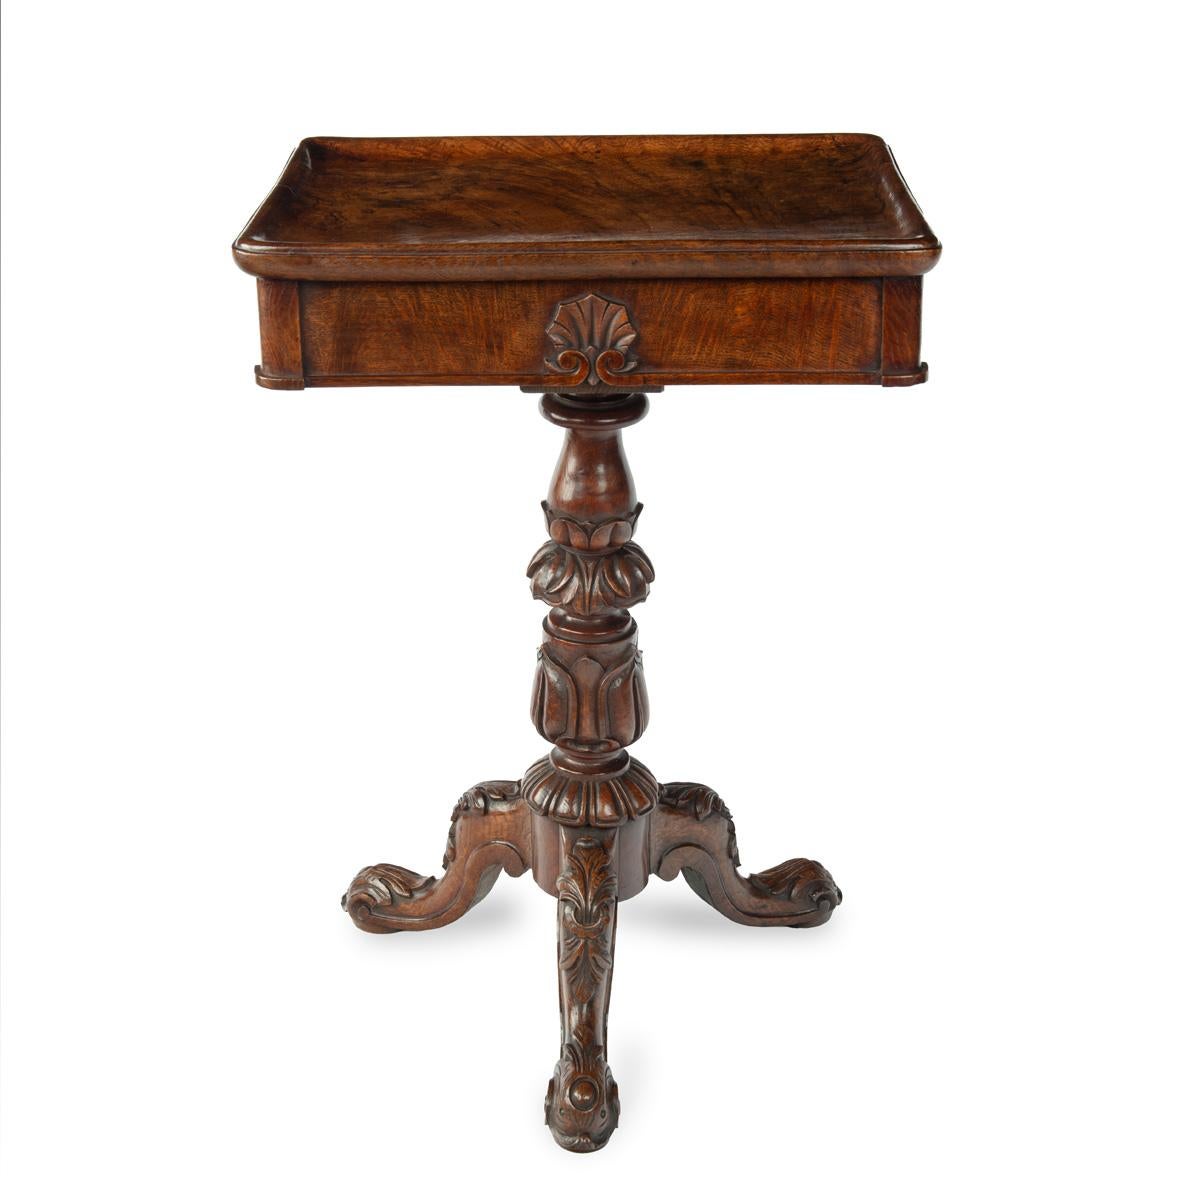 Table d'appoint tripode en chêne très figuré de George IV, attribuée à Gillows. Le plateau rectangulaire est fabriqué à partir d'une seule pièce de chêne massif, avec un tiroir en frise à une extrémité, et repose sur un support en balustre tourné et